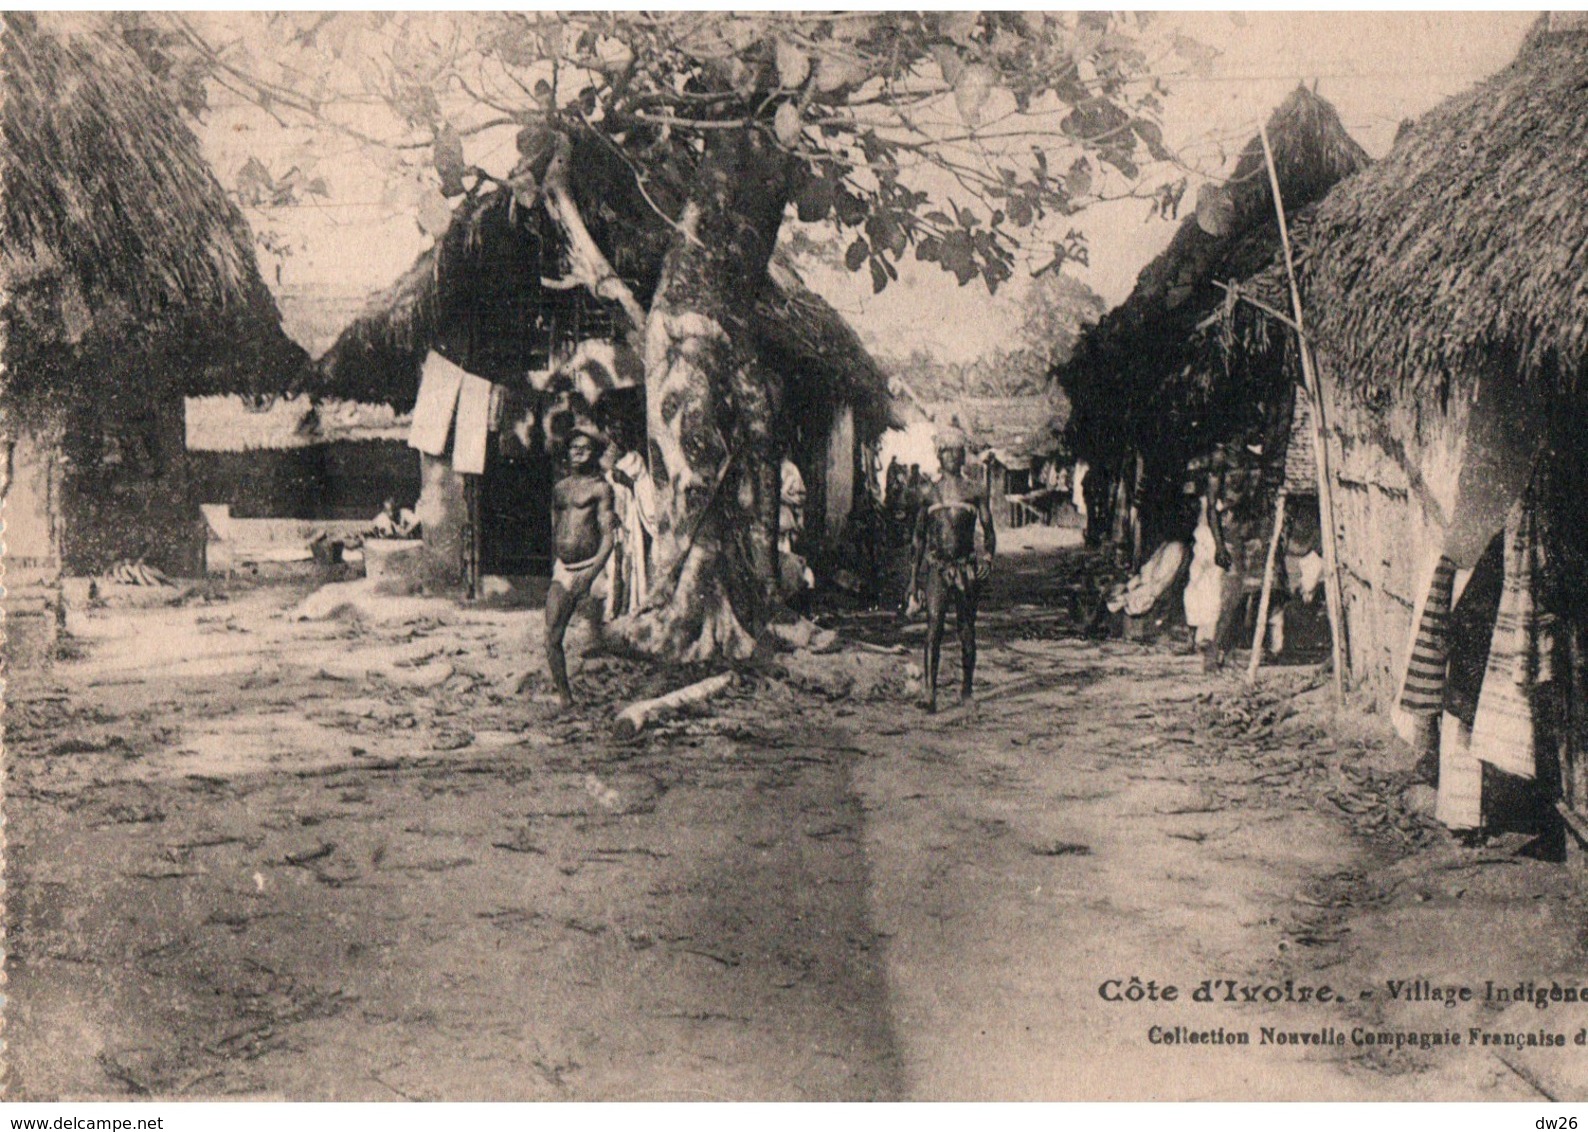 Côte D'Ivoire - Village Indigène - Collection Nouvelle Compagnie Française De Koug - Elfenbeinküste